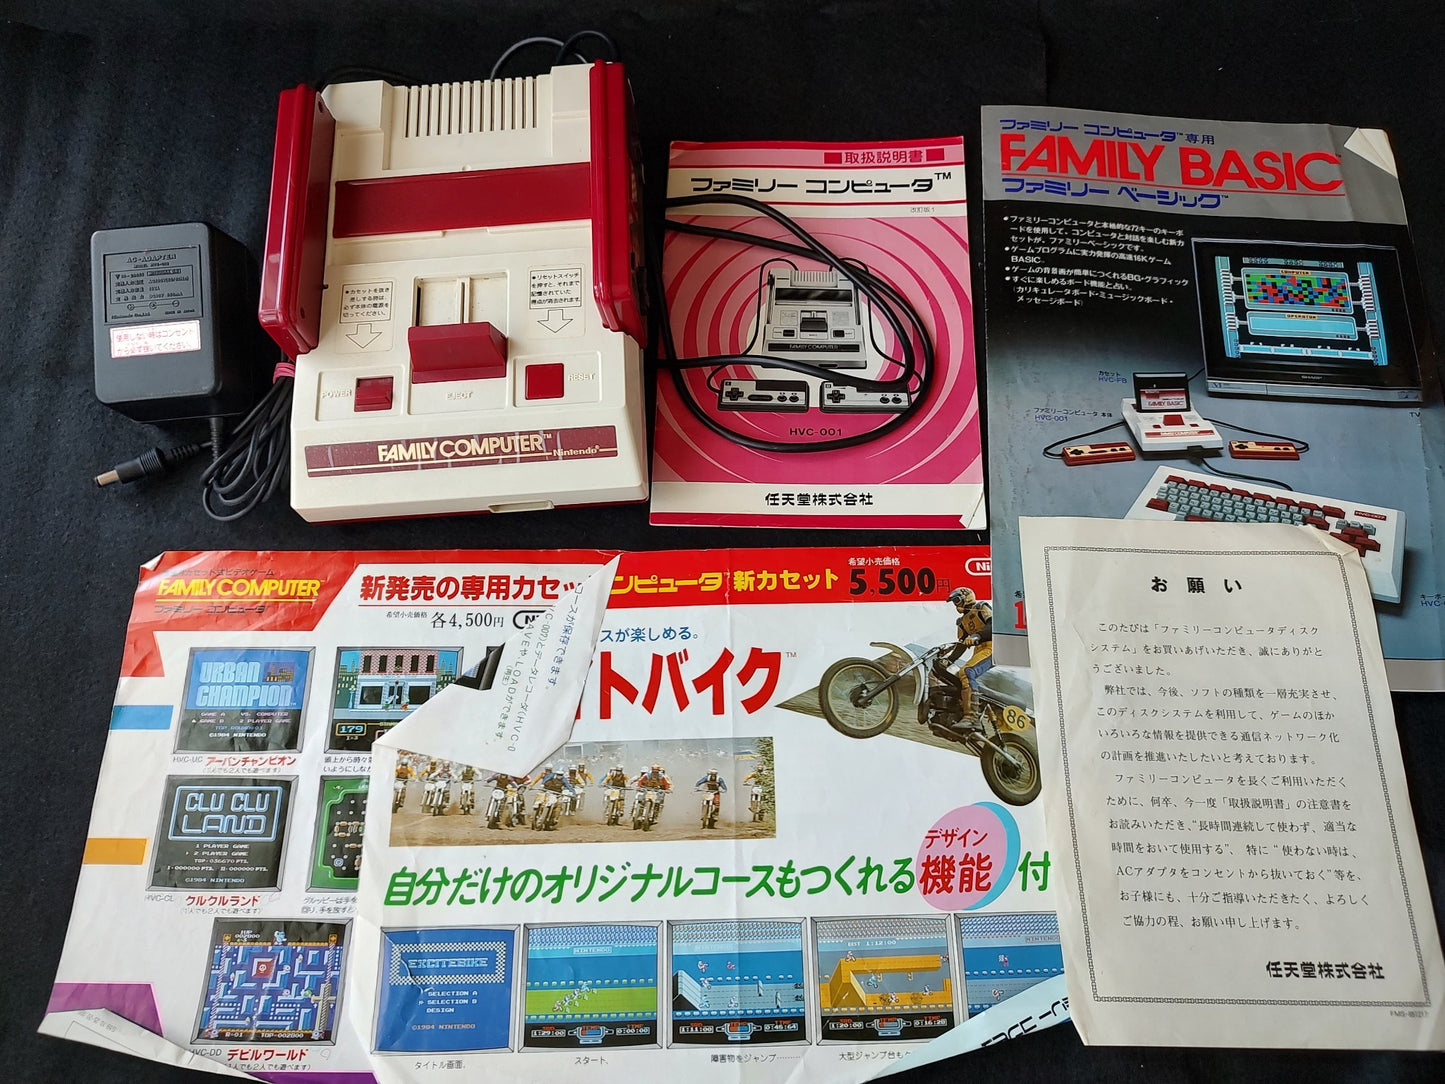 Nintendo Famicom NES HVC-001 Console, PSU, Manual, Flyer set